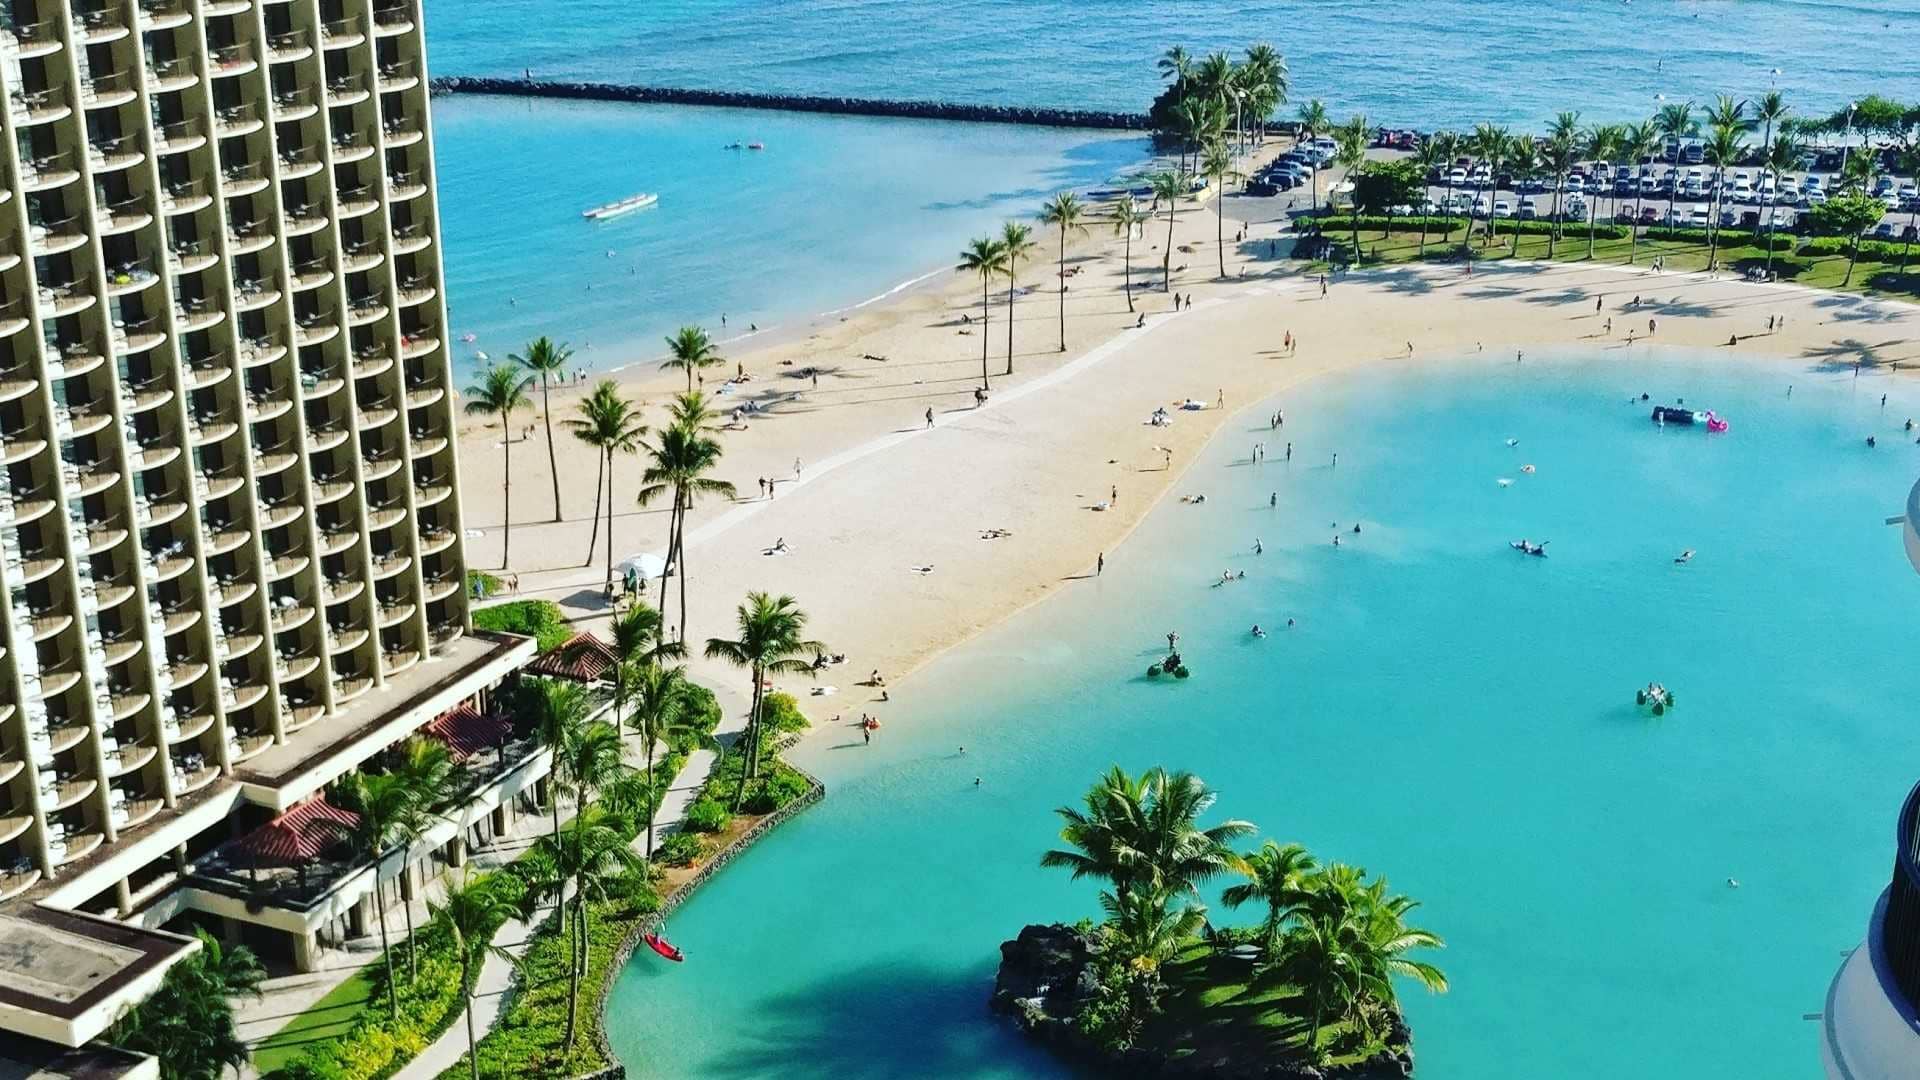 Hawaiian Hotel overlooking the water